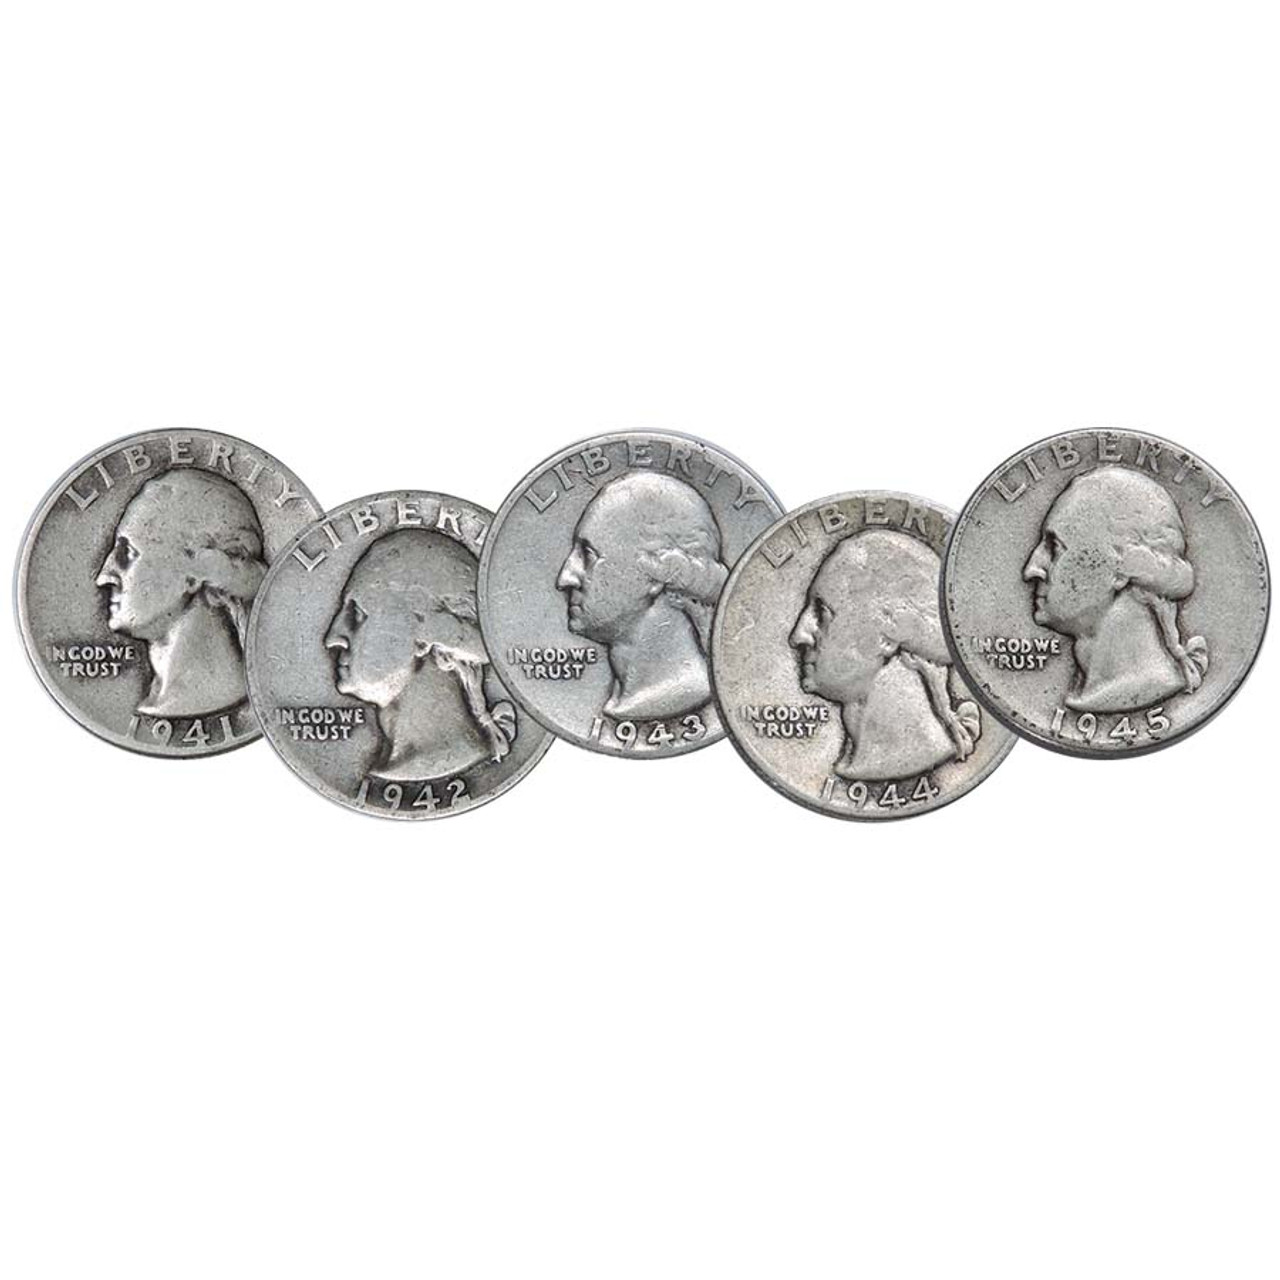 WWII Era 1941-1945 Washington Silver Quarter 5-Coin Set Very Good to Fine